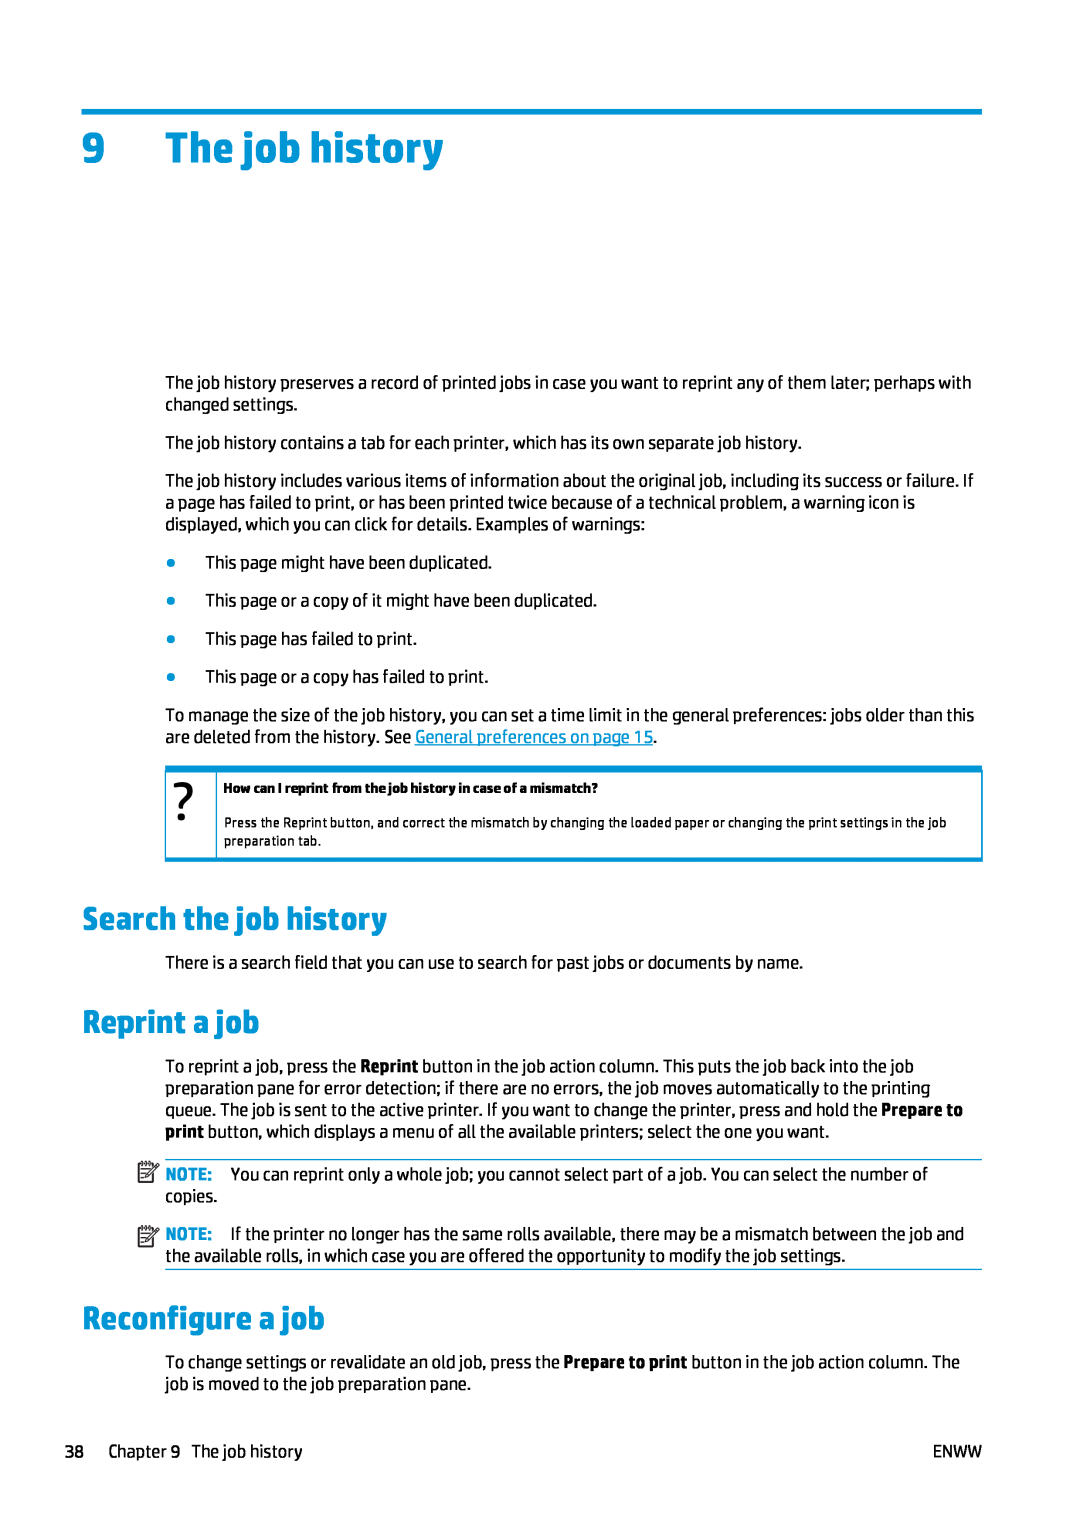 HP SmartStream Software for s manual The job history, Search the job history, Reprint a job, Reconfigure a job 